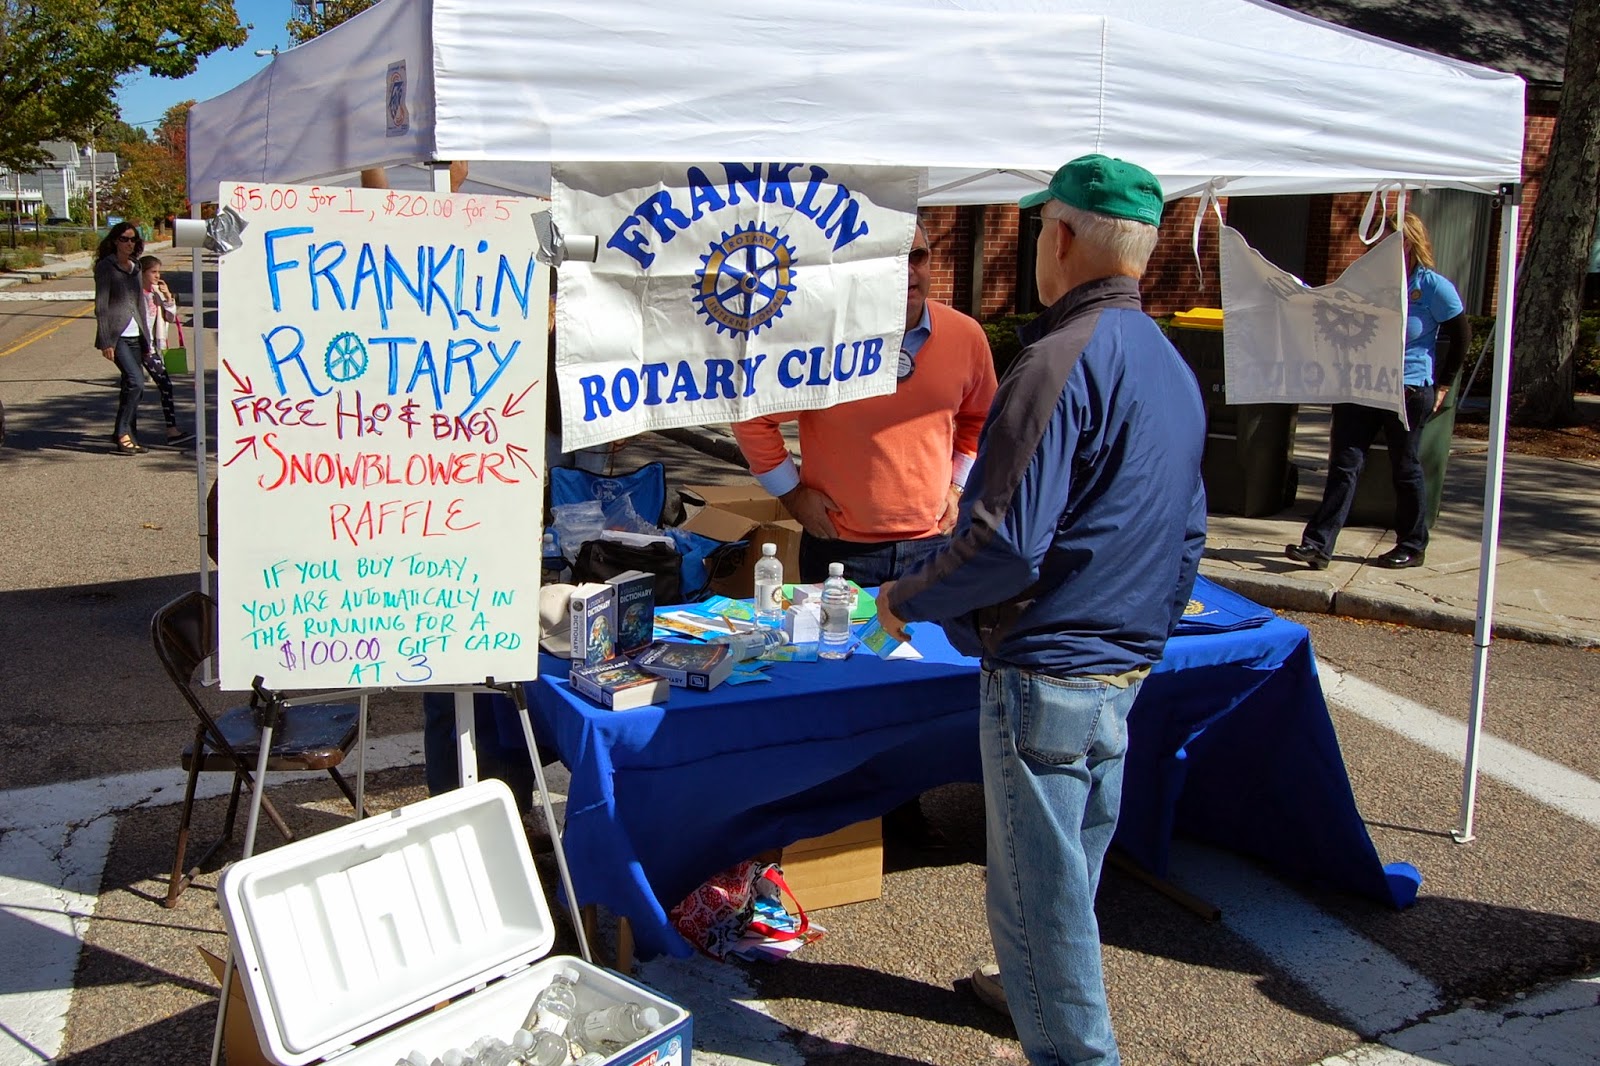 Franklin Rotary Club